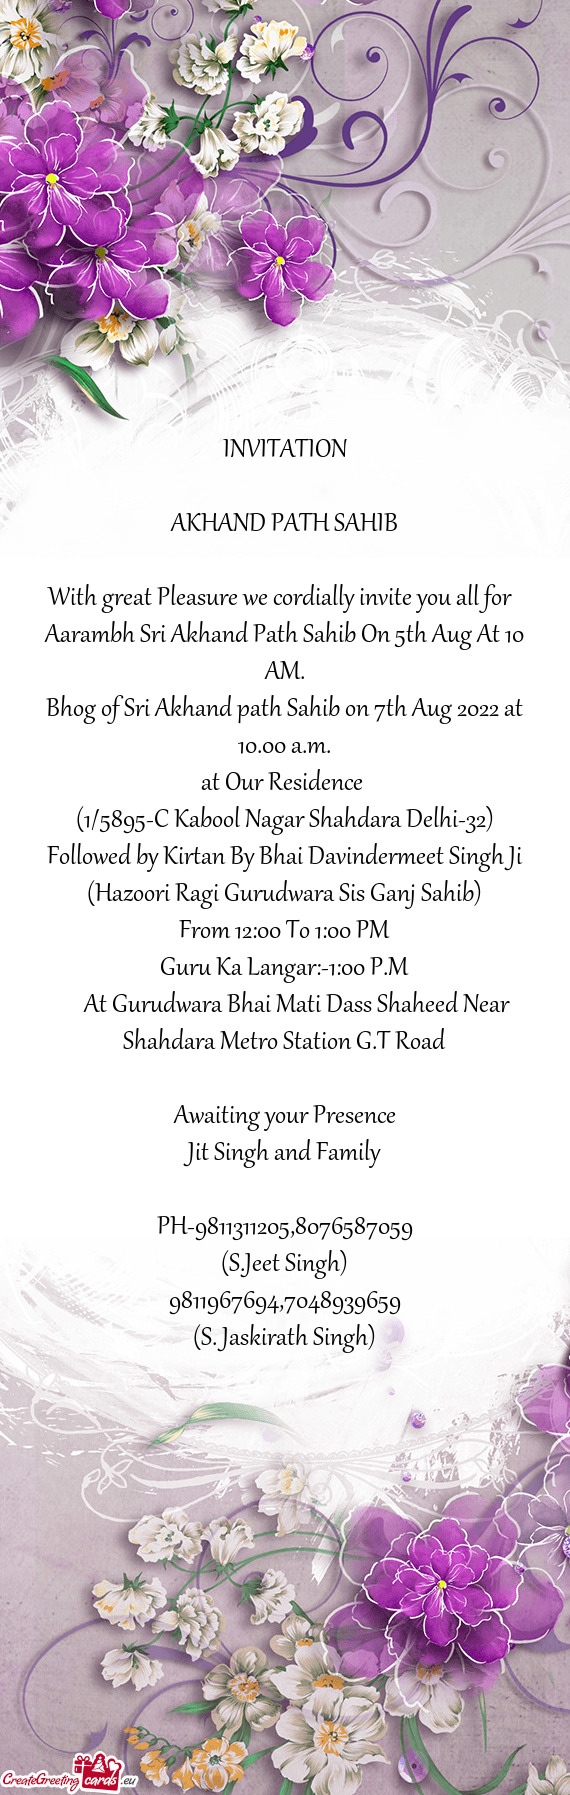 Bhog of Sri Akhand path Sahib on 7th Aug 2022 at 10.00 a.m